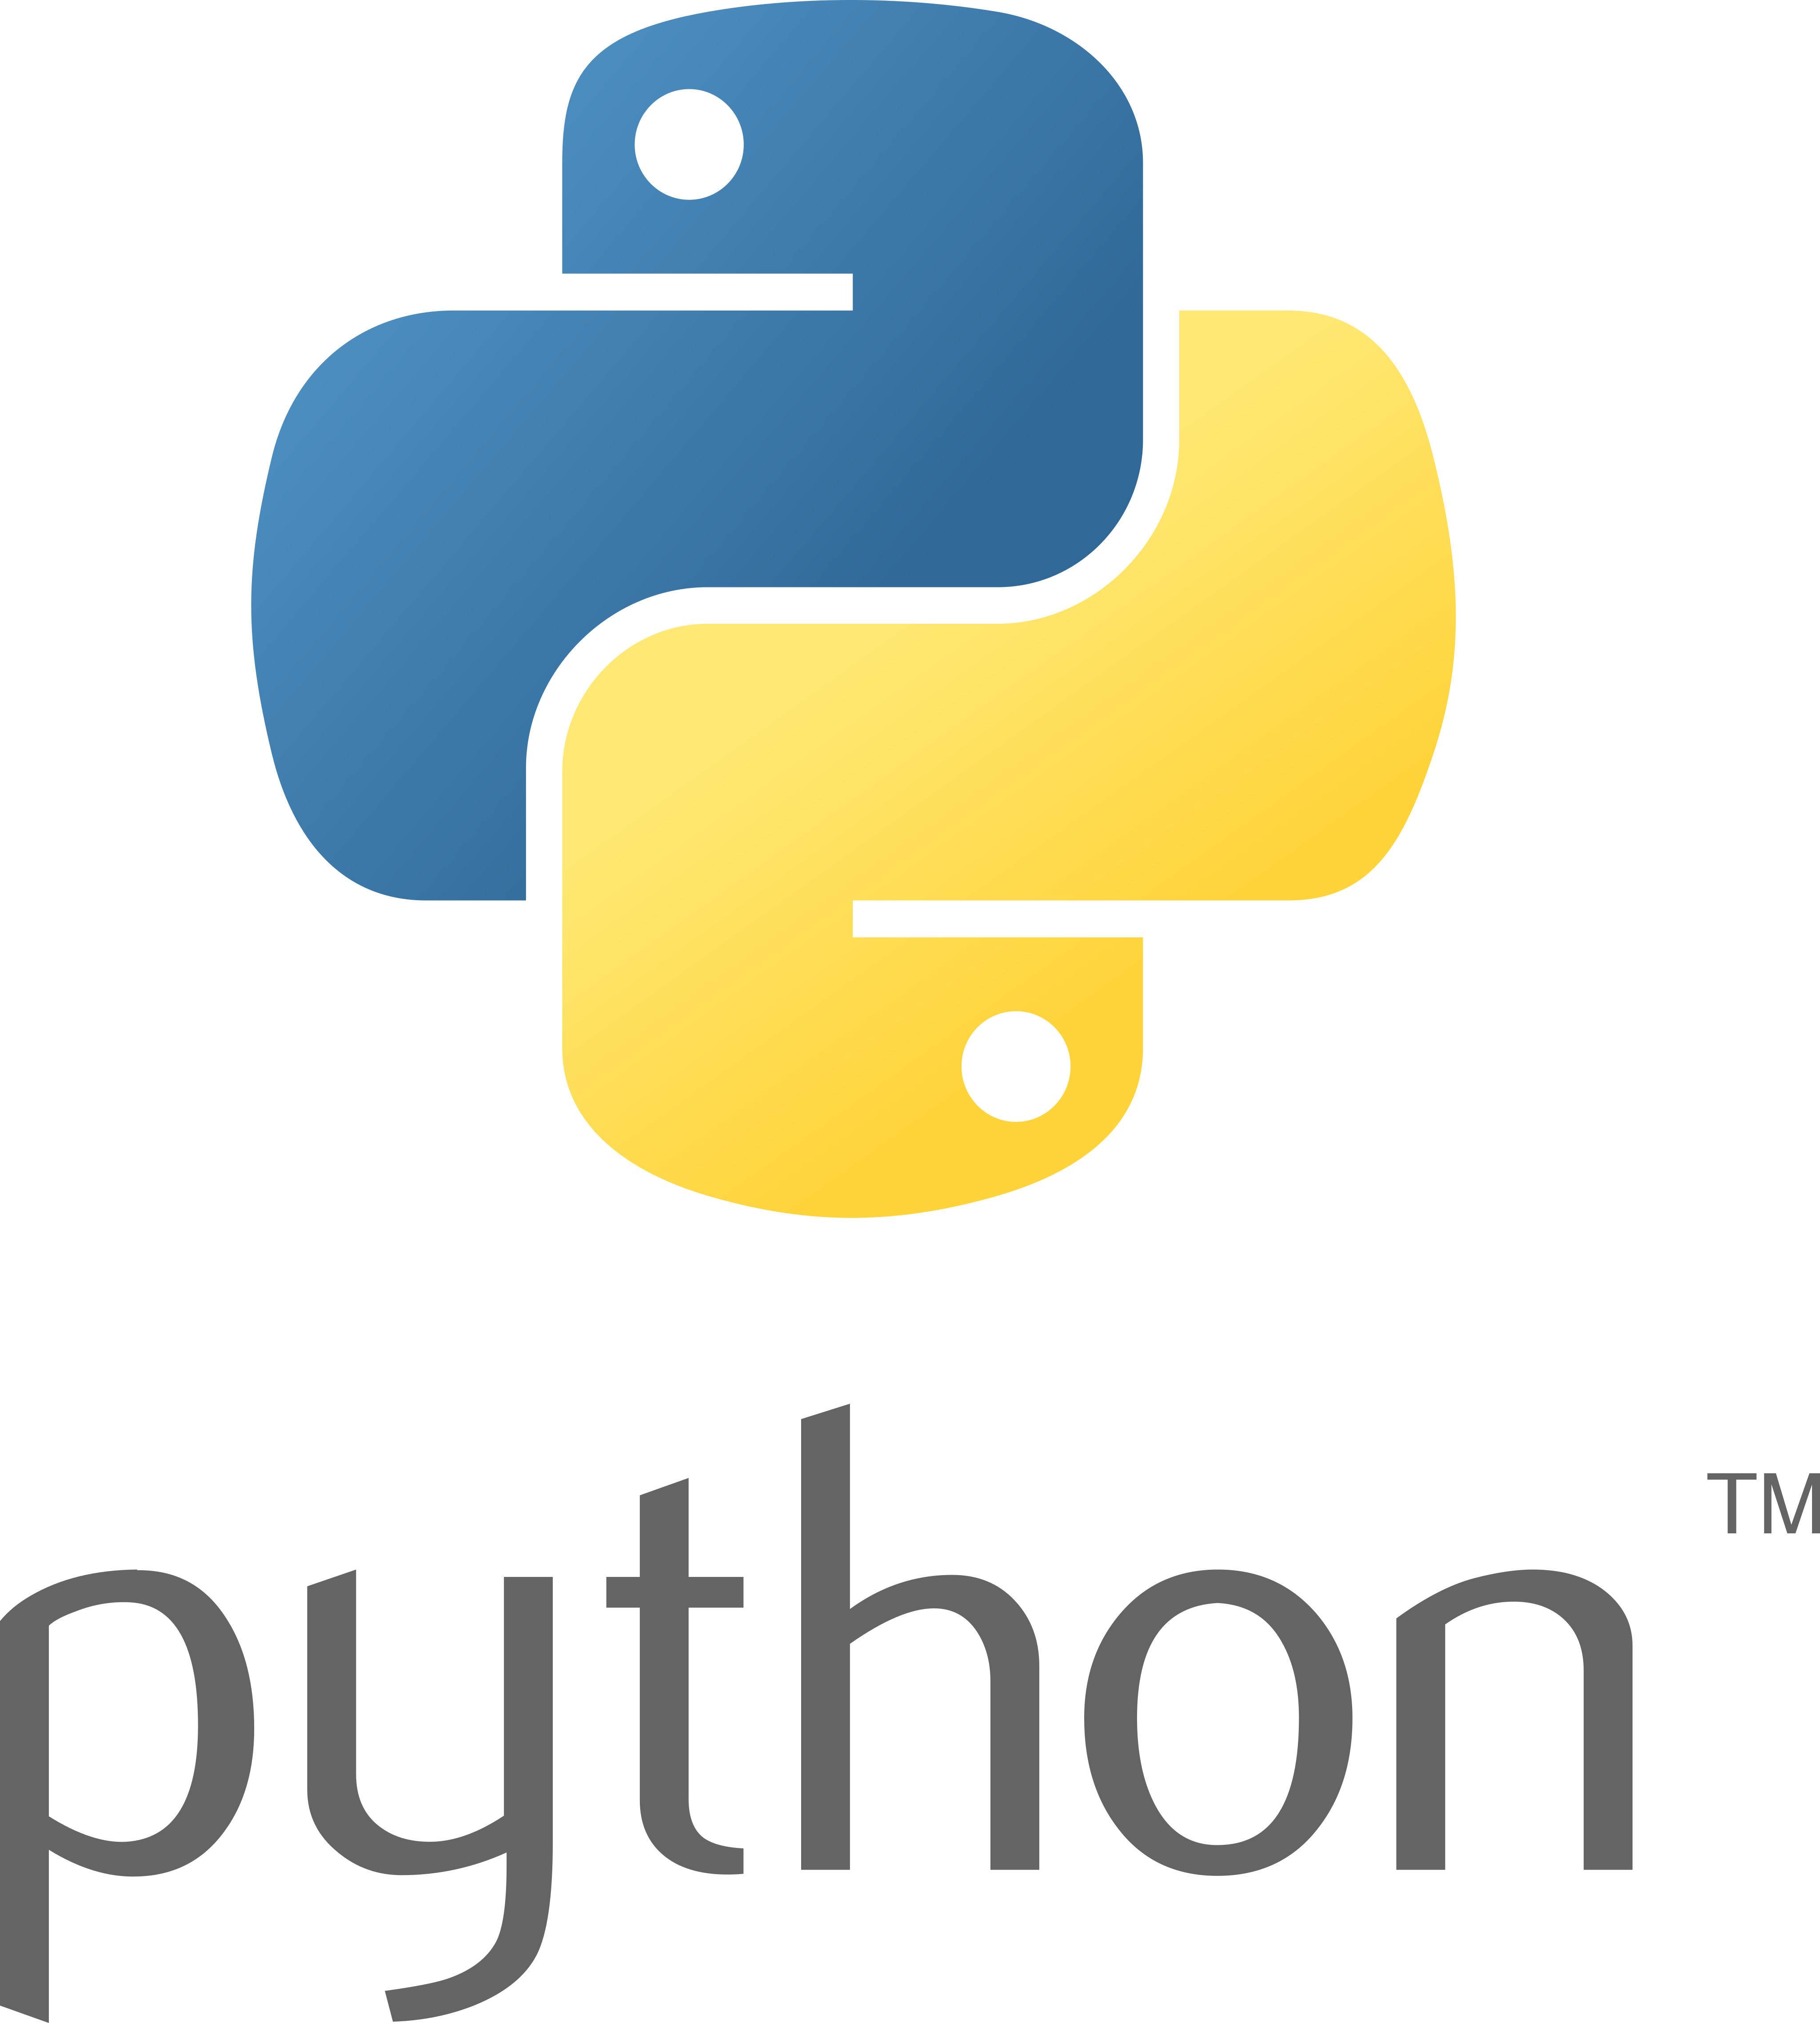 Python Logo Png Transparent I